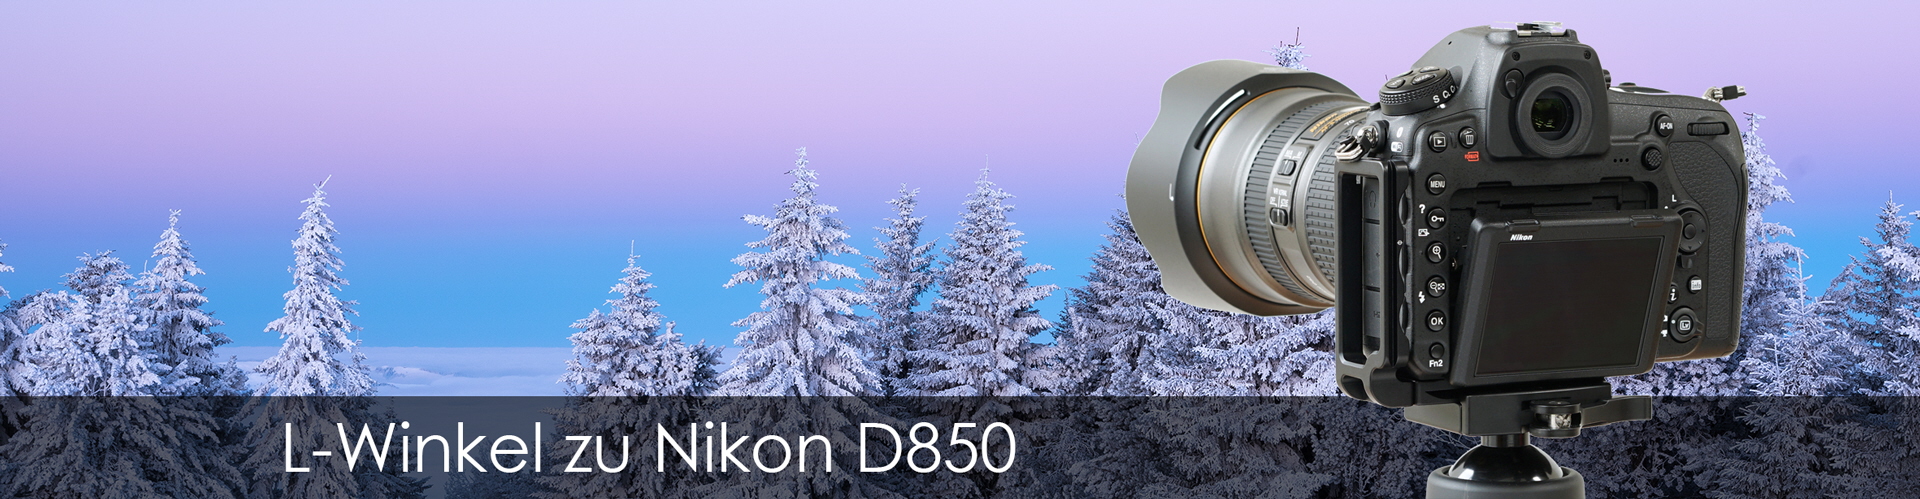 L-Winkel zu Nikon D850 arca-kompatibel